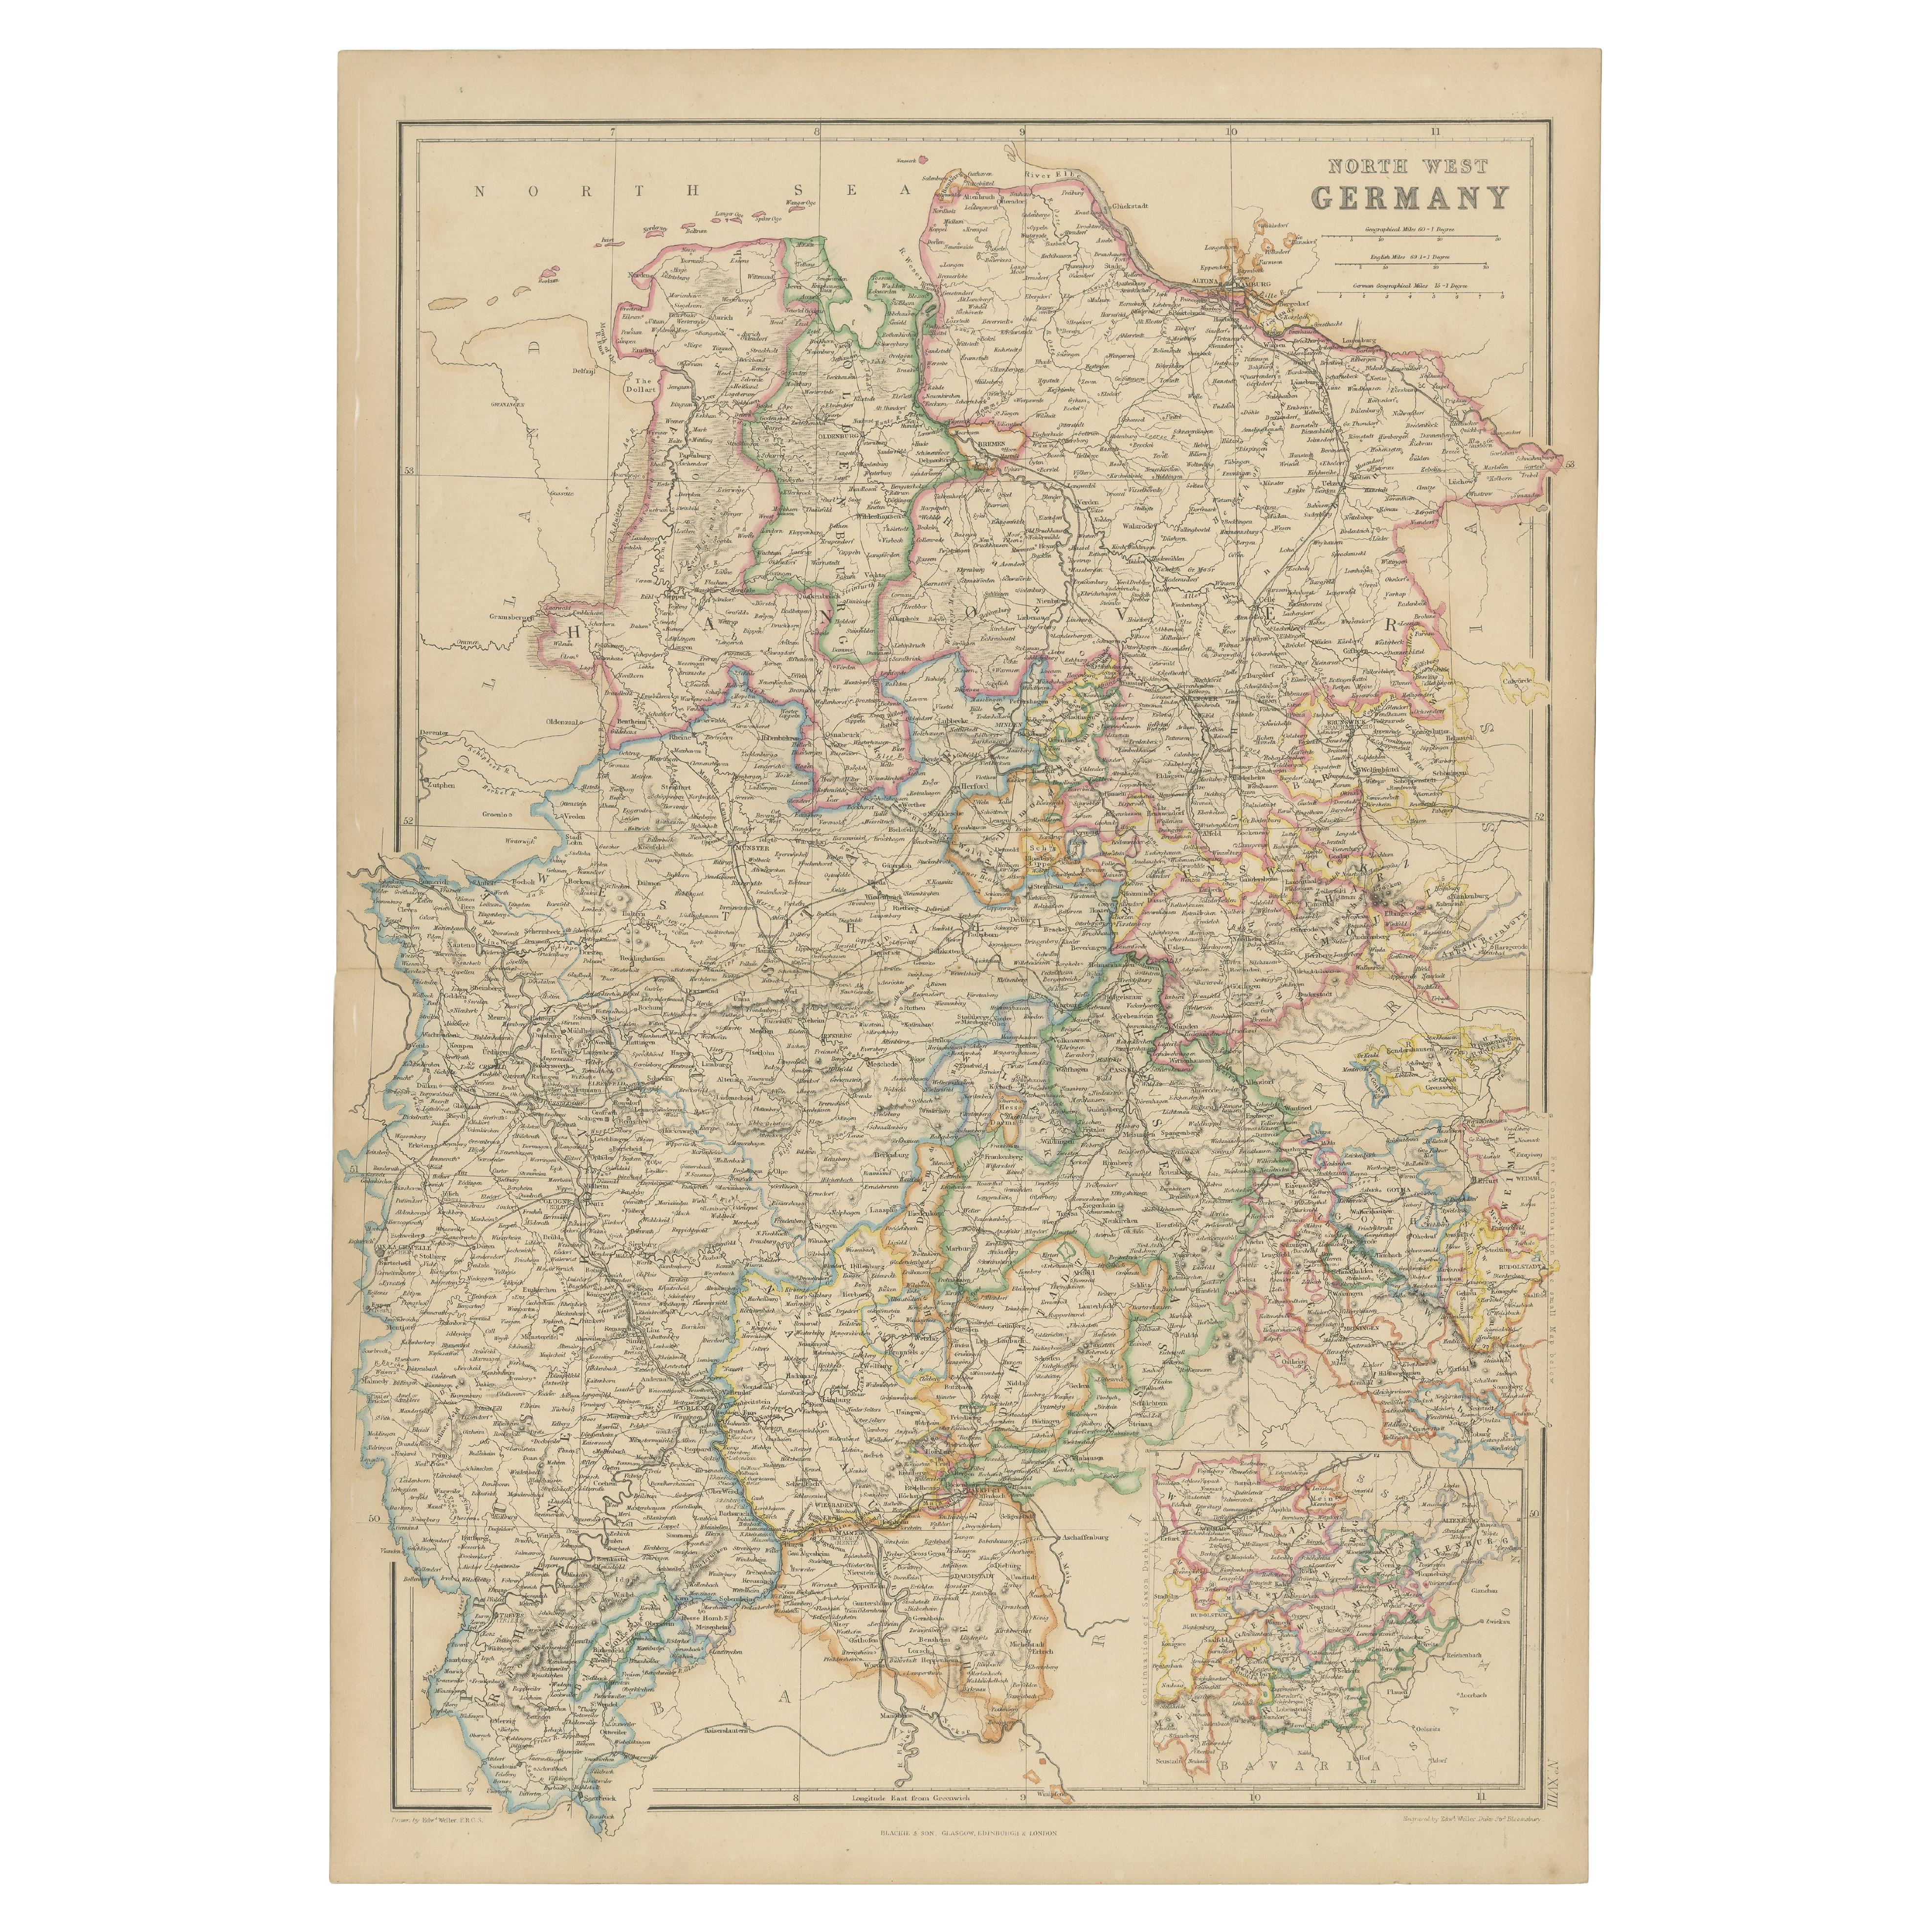 1859 Carte détaillée de l'Allemagne du Nord-Ouest avec encart sur la Bavière - Blackie's Atlas